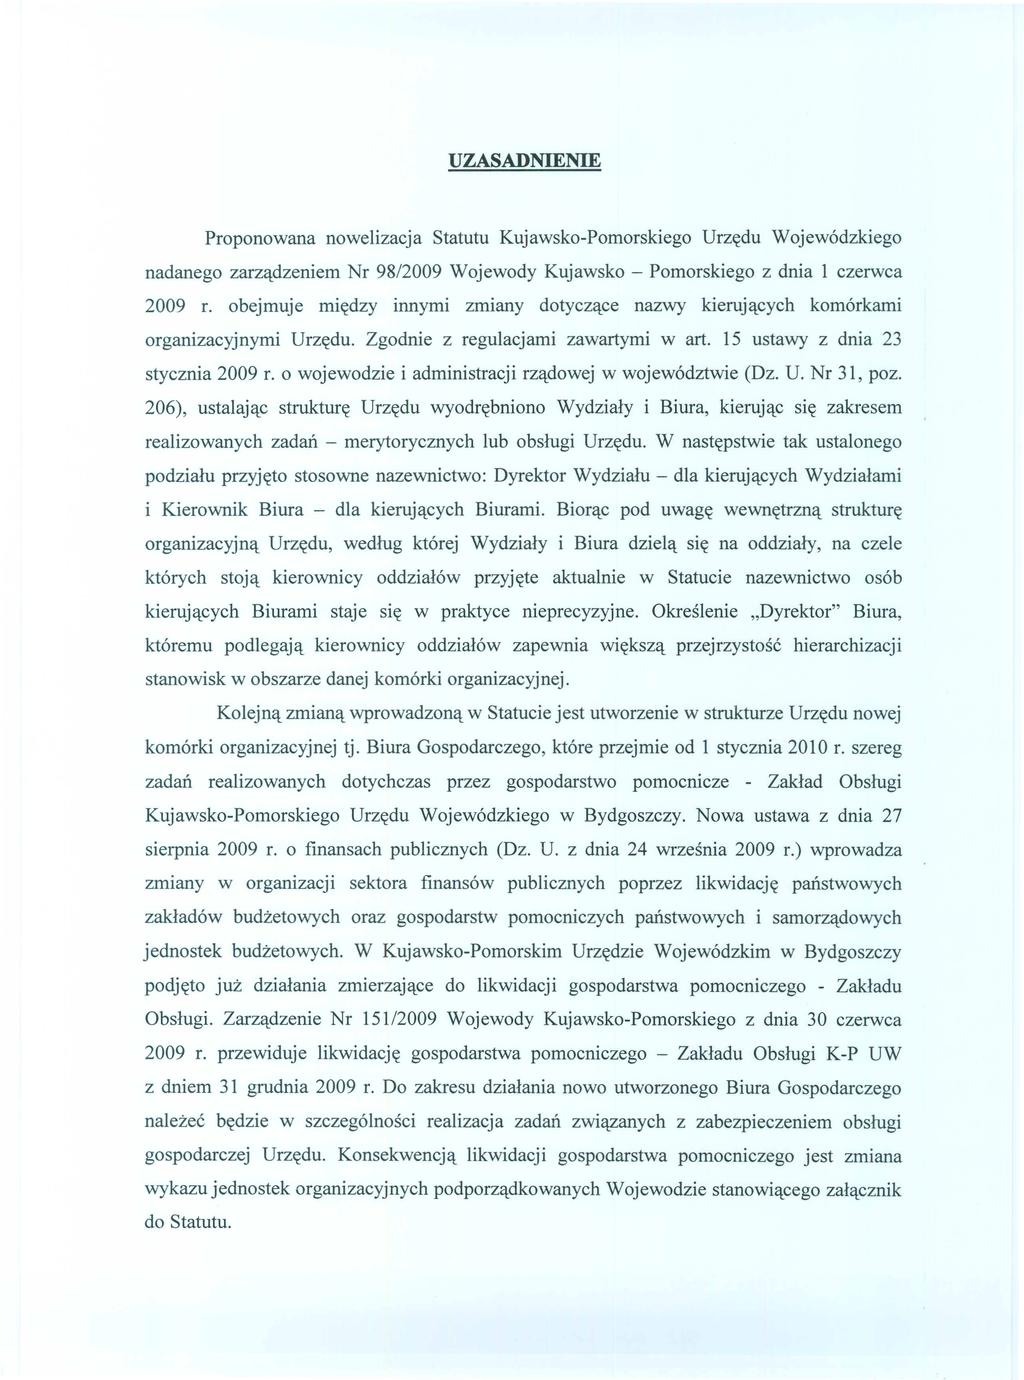 Proponowana nowelizacja Statutu Kujawsko-Pomorskiego Urz~du Wojew6dzkiego nadanego zarzlldzeniem Nr 98/2009 Wojewody Kujawsko - Pomorskiego z dnia 1 czerwca 2009 r.